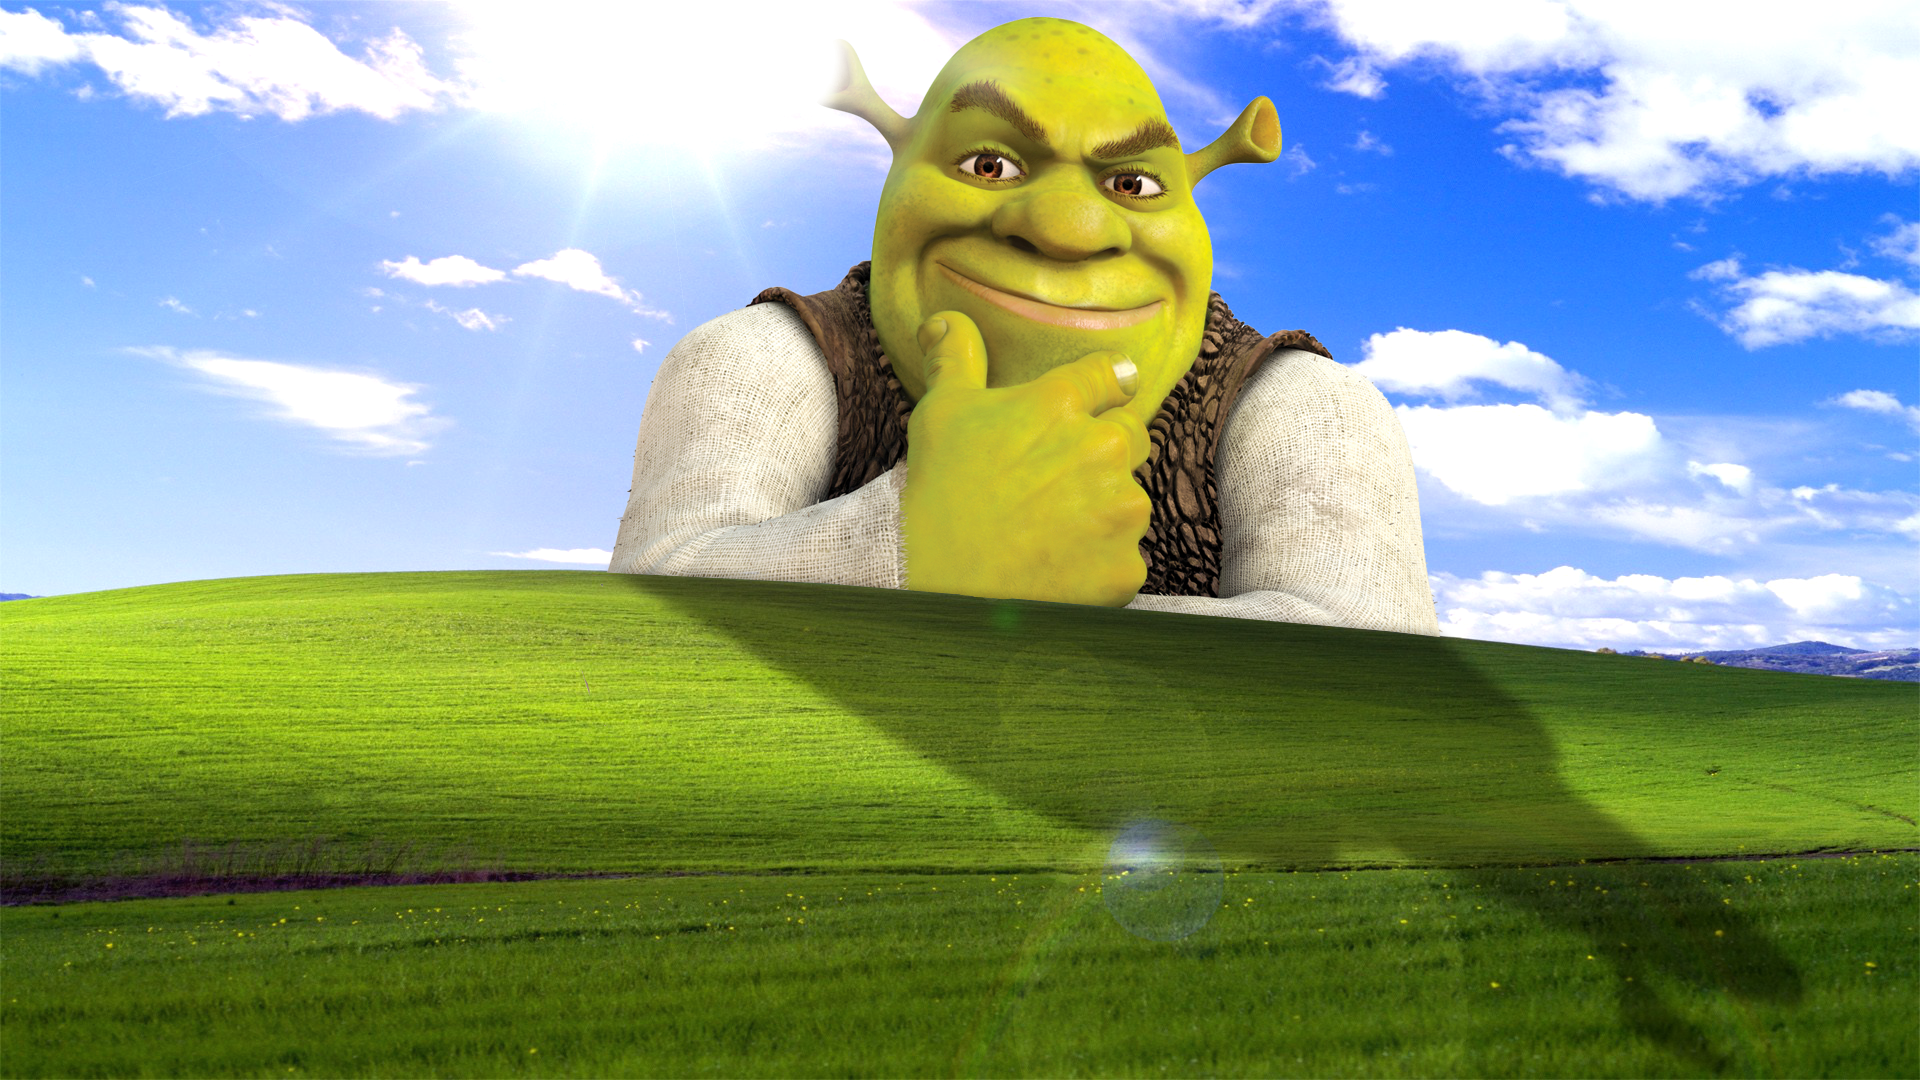 I'm removing Shrek as my desktop wallpaper after 81 days